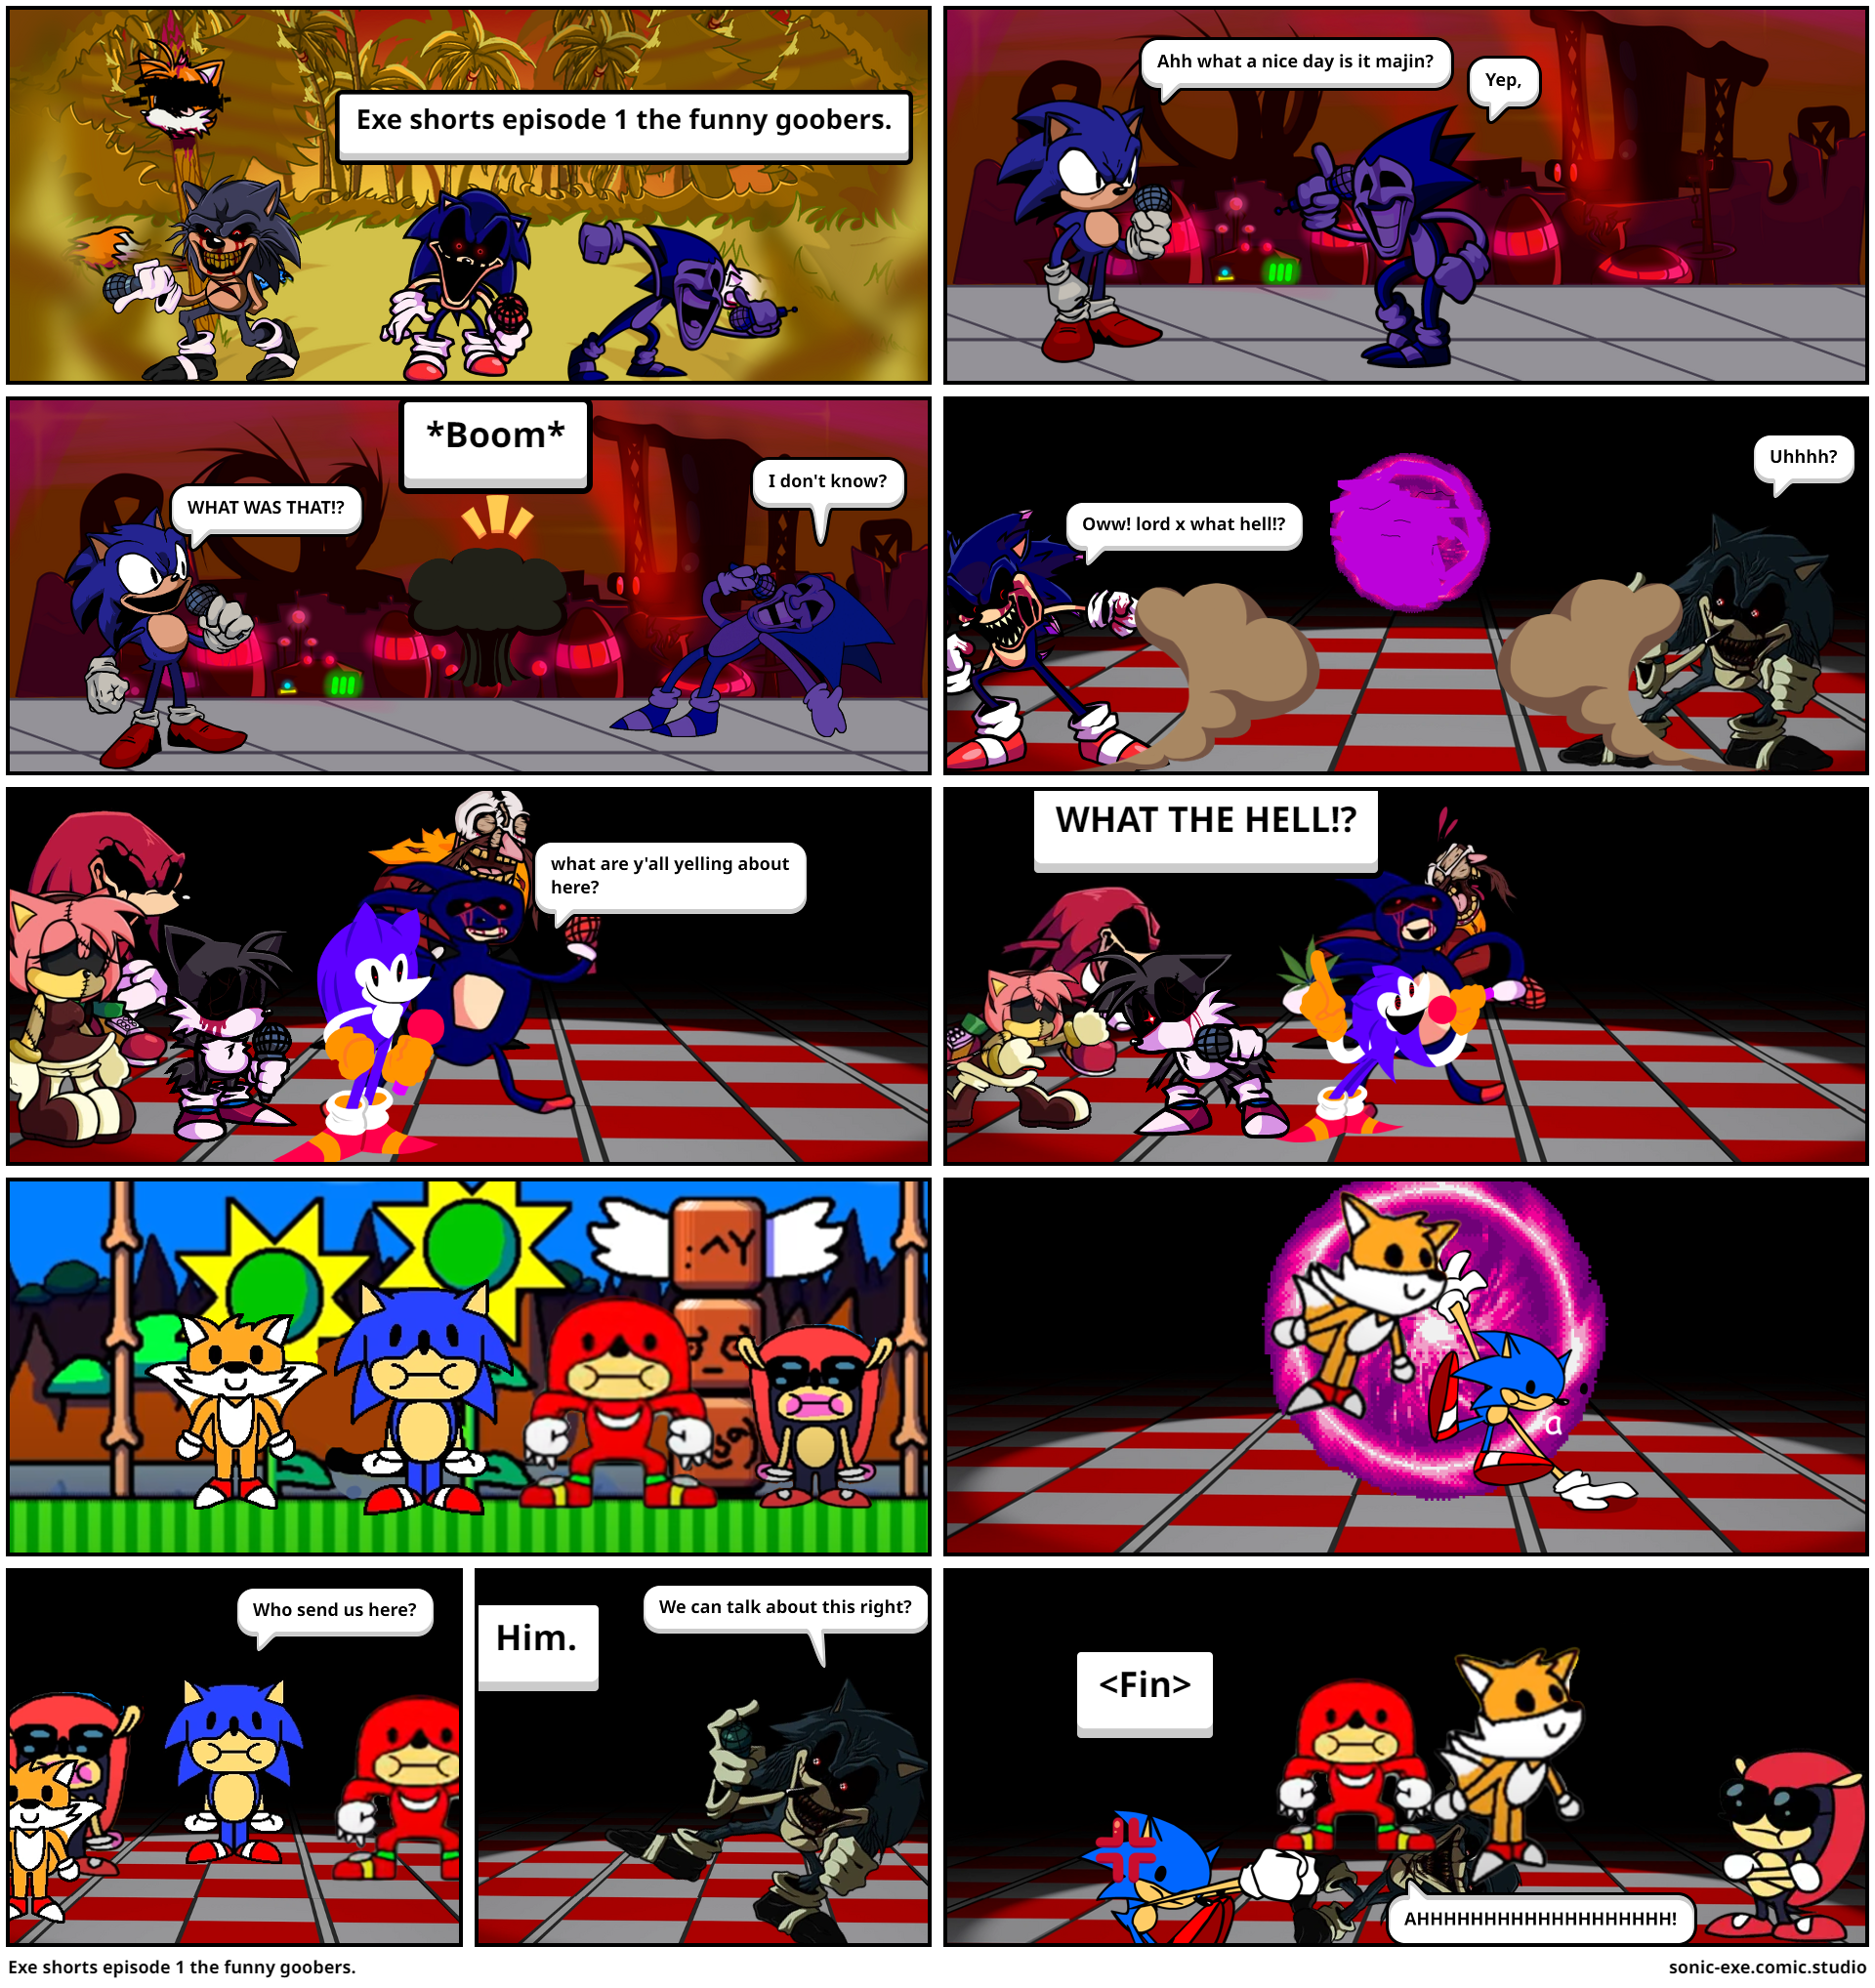 Lord X eats Sonic - Comic Studio